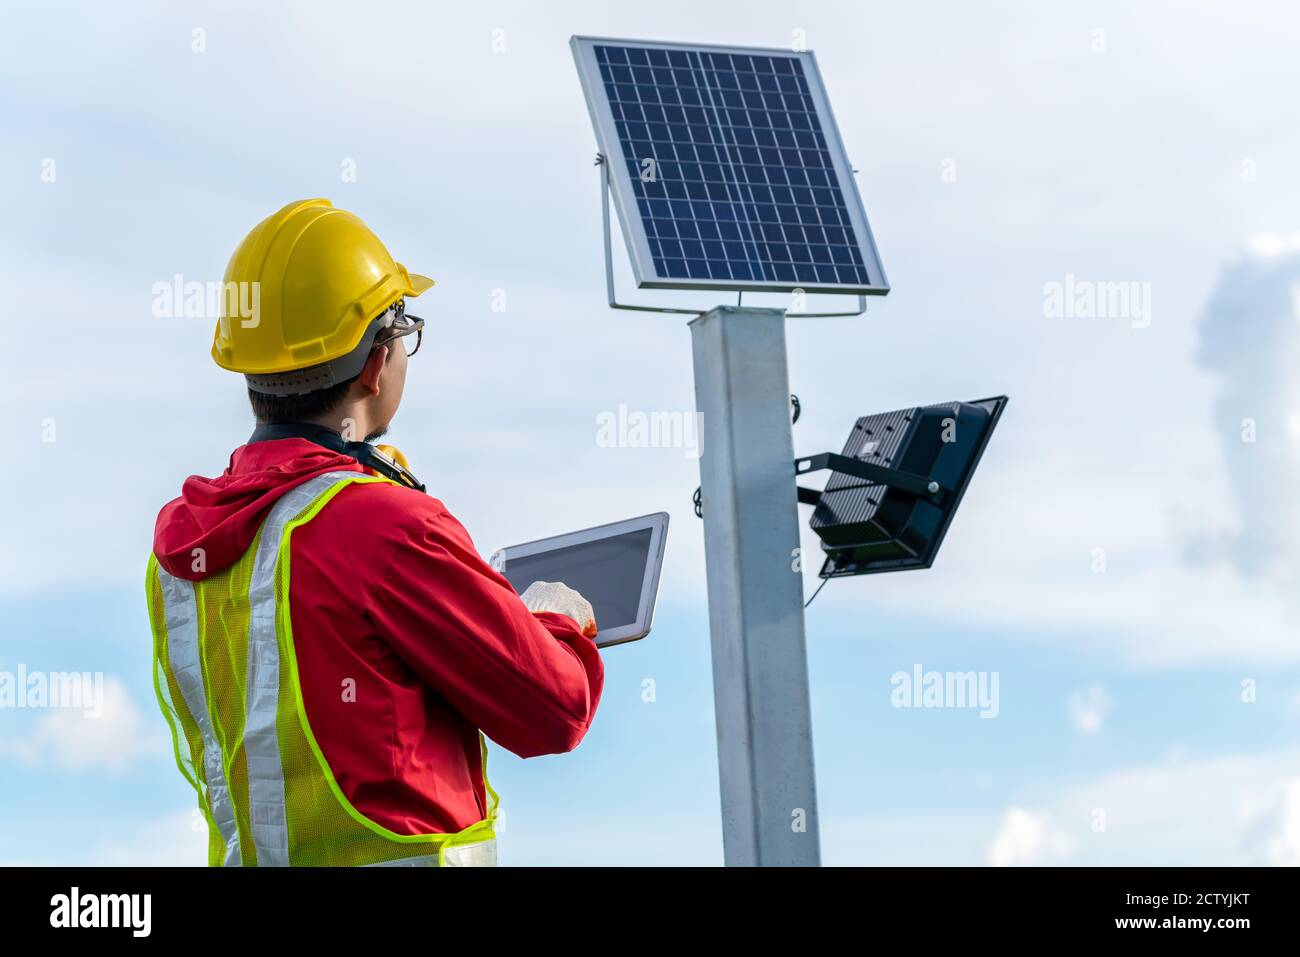 Tecnico asiatico verifica la manutenzione dei pannelli solari, palo per illuminazione esterna con piccola energia solare pannello da parte di themself è nuova tecnologia e ener Foto Stock